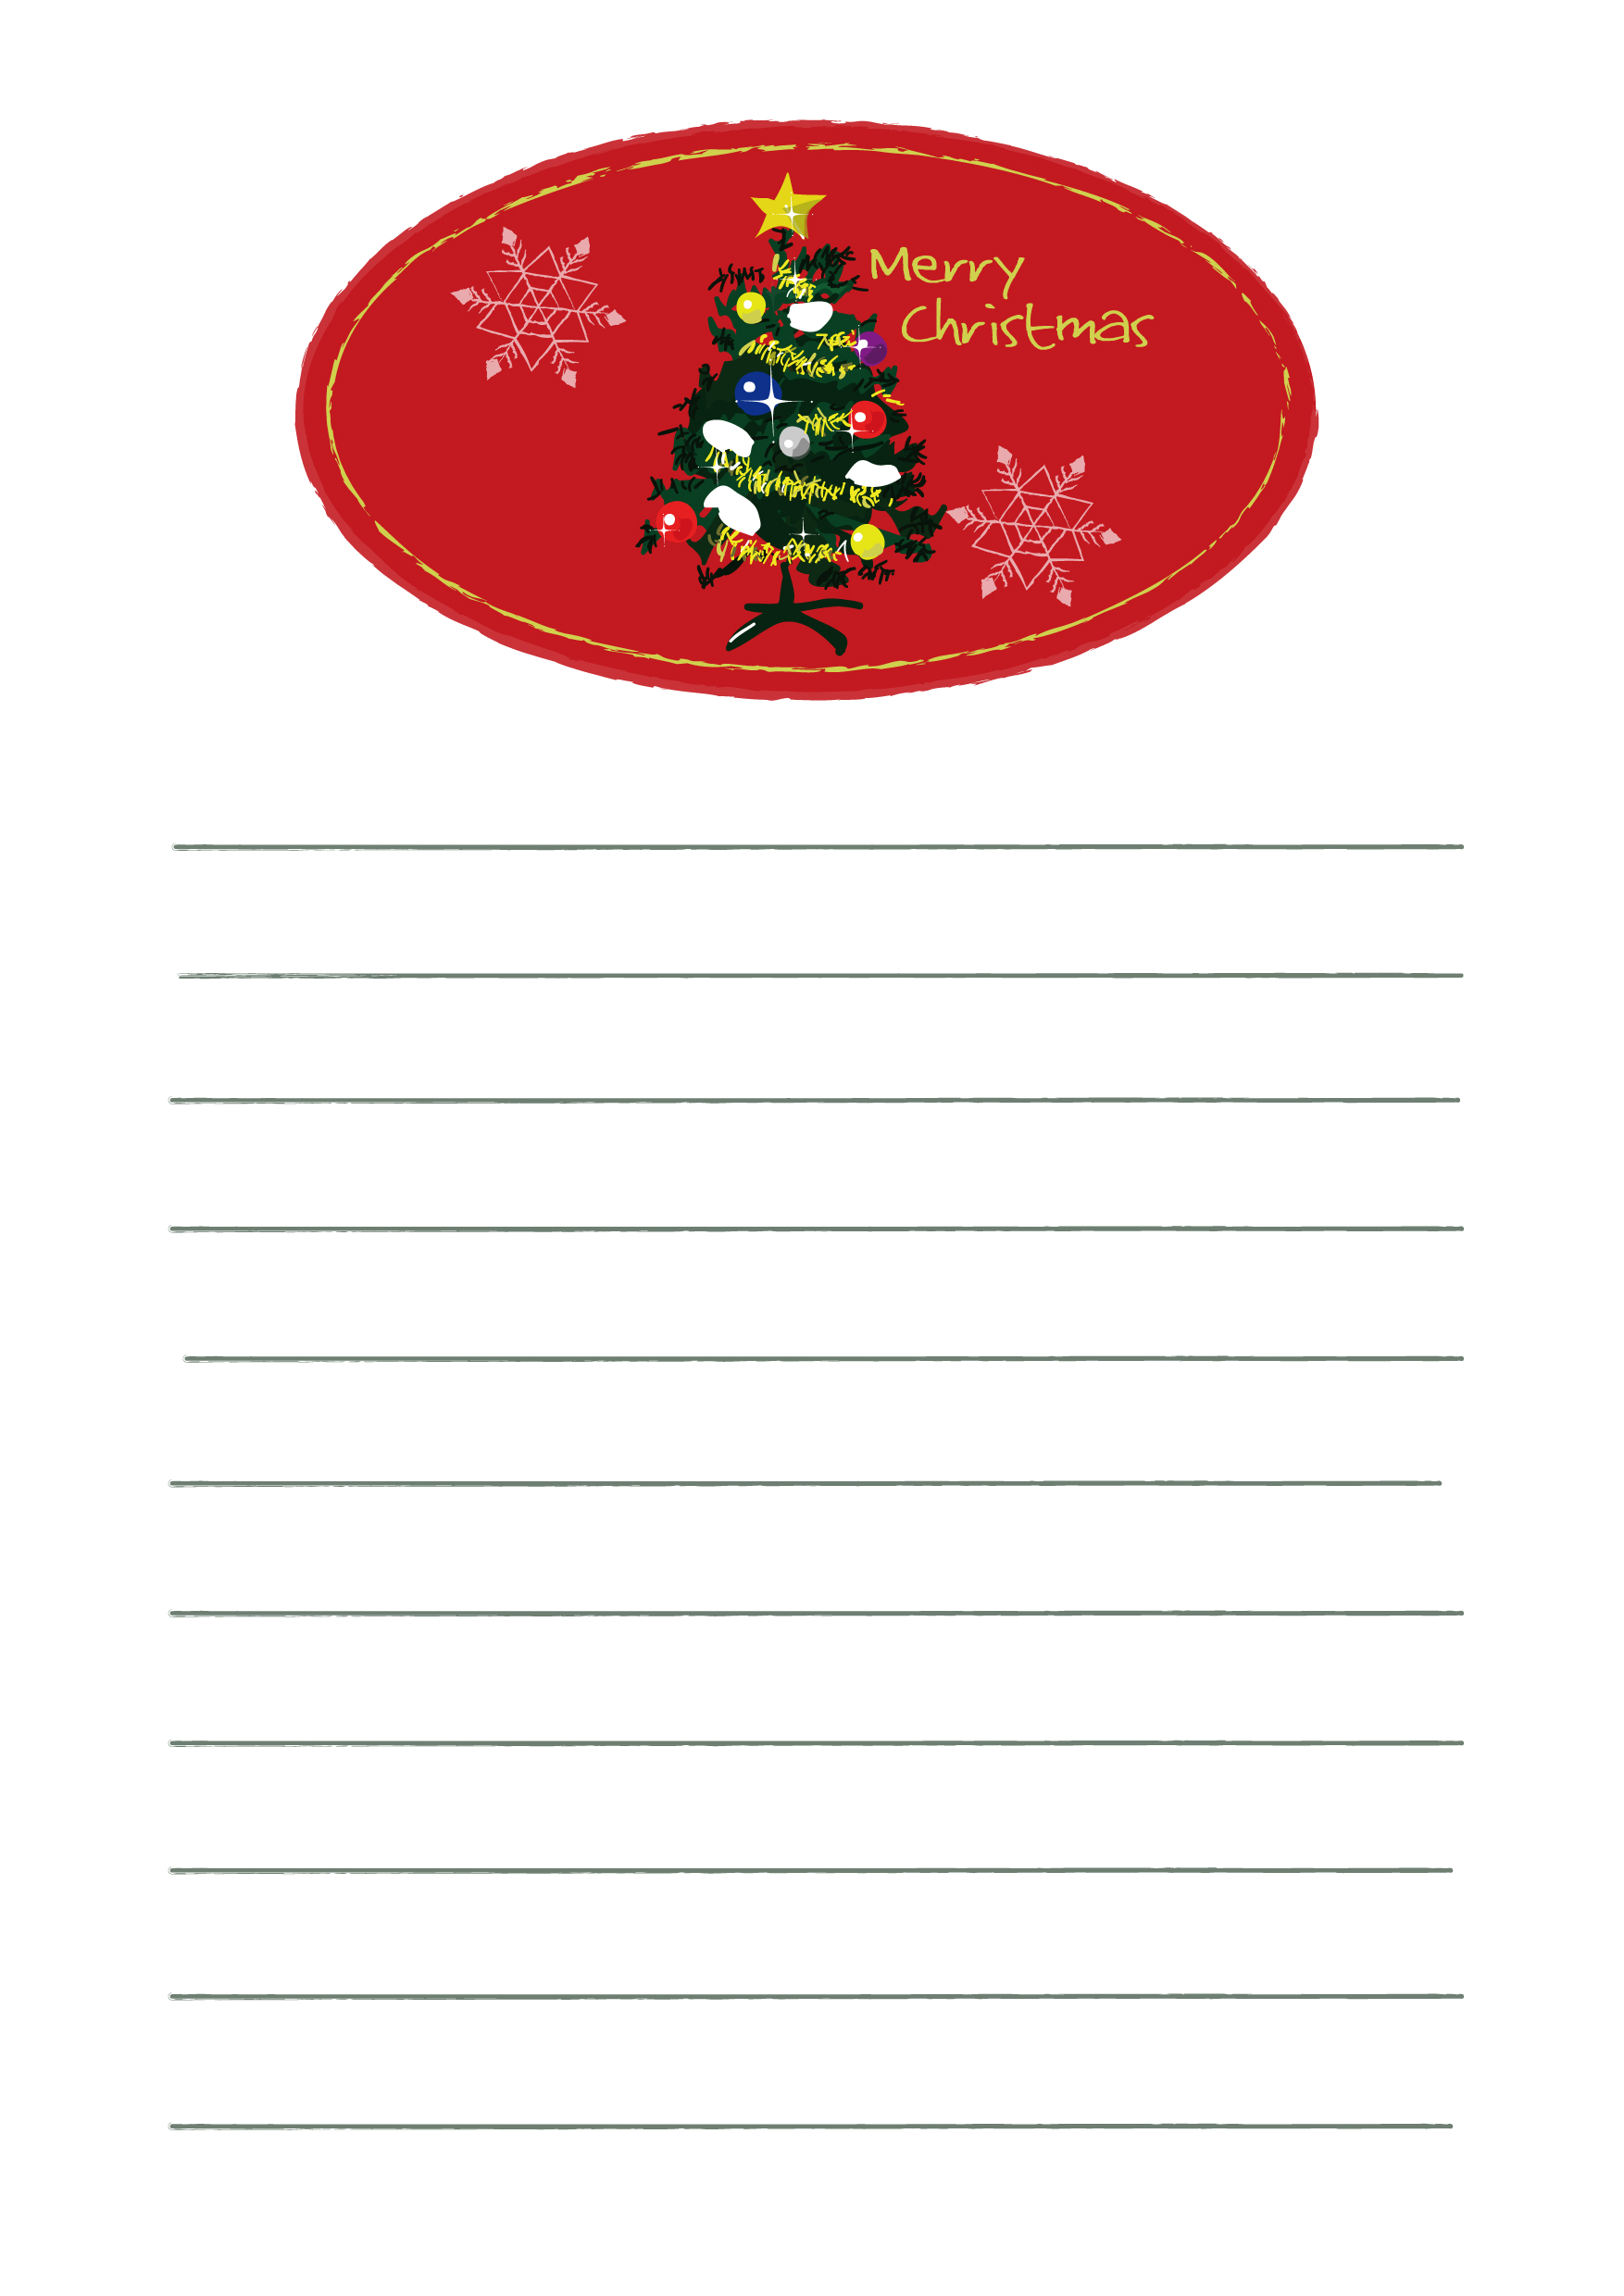 便箋テンプレート クリスマスツリーのラベル1 ダウンロード かわいい無料イラスト 素材絵箱クリスマス館